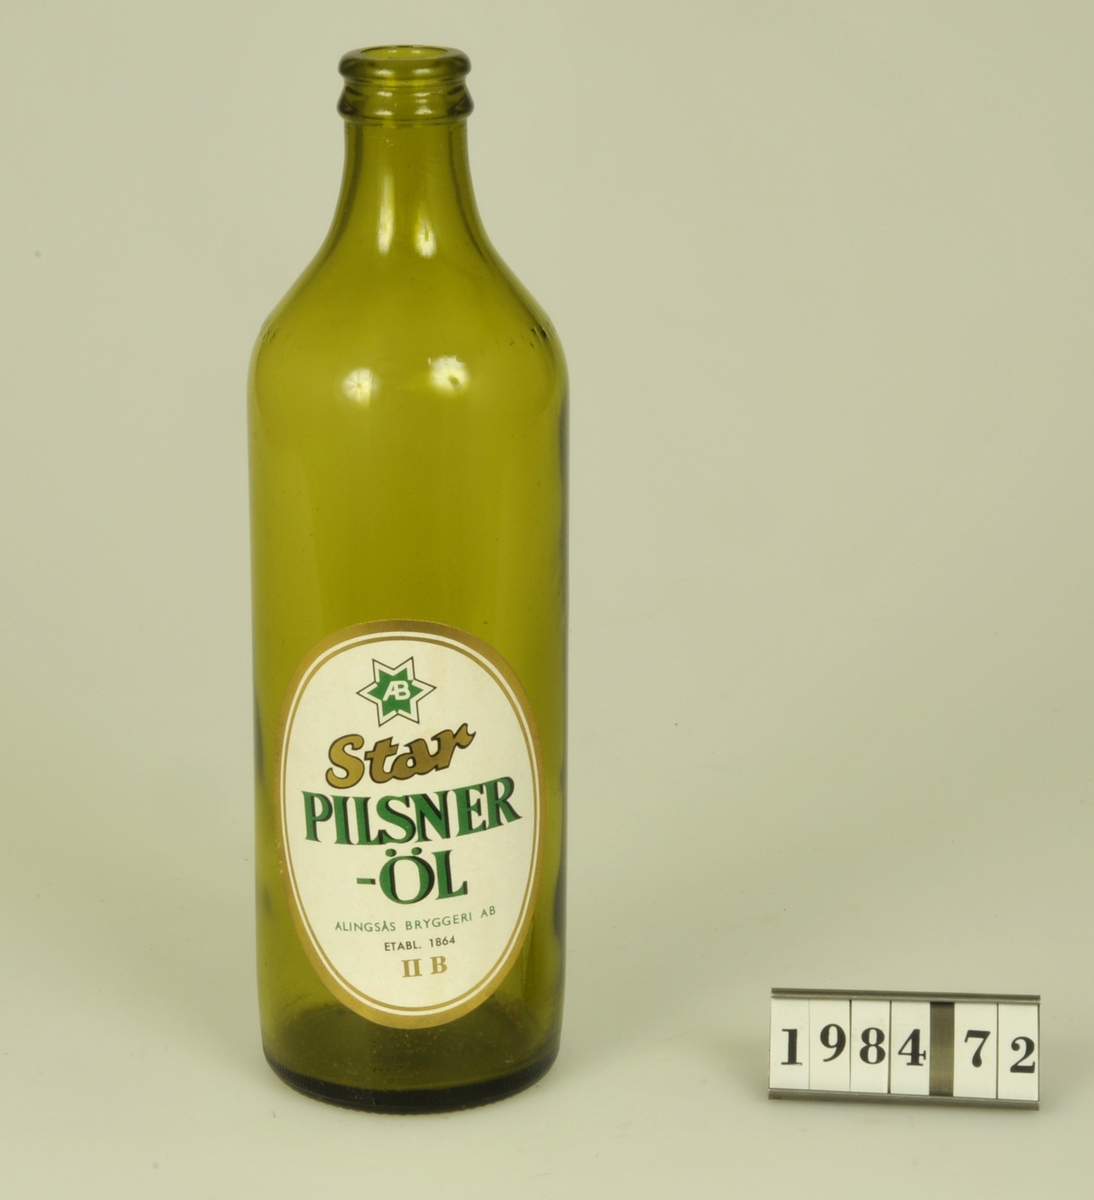 Butelj av grönfärgat glas, Etikett: "Star Pilsner-Öl Alingsås
Bryggeri AB Etabl. 1864 11B".

Märkt i botten: "PLM 6-6 S08".
